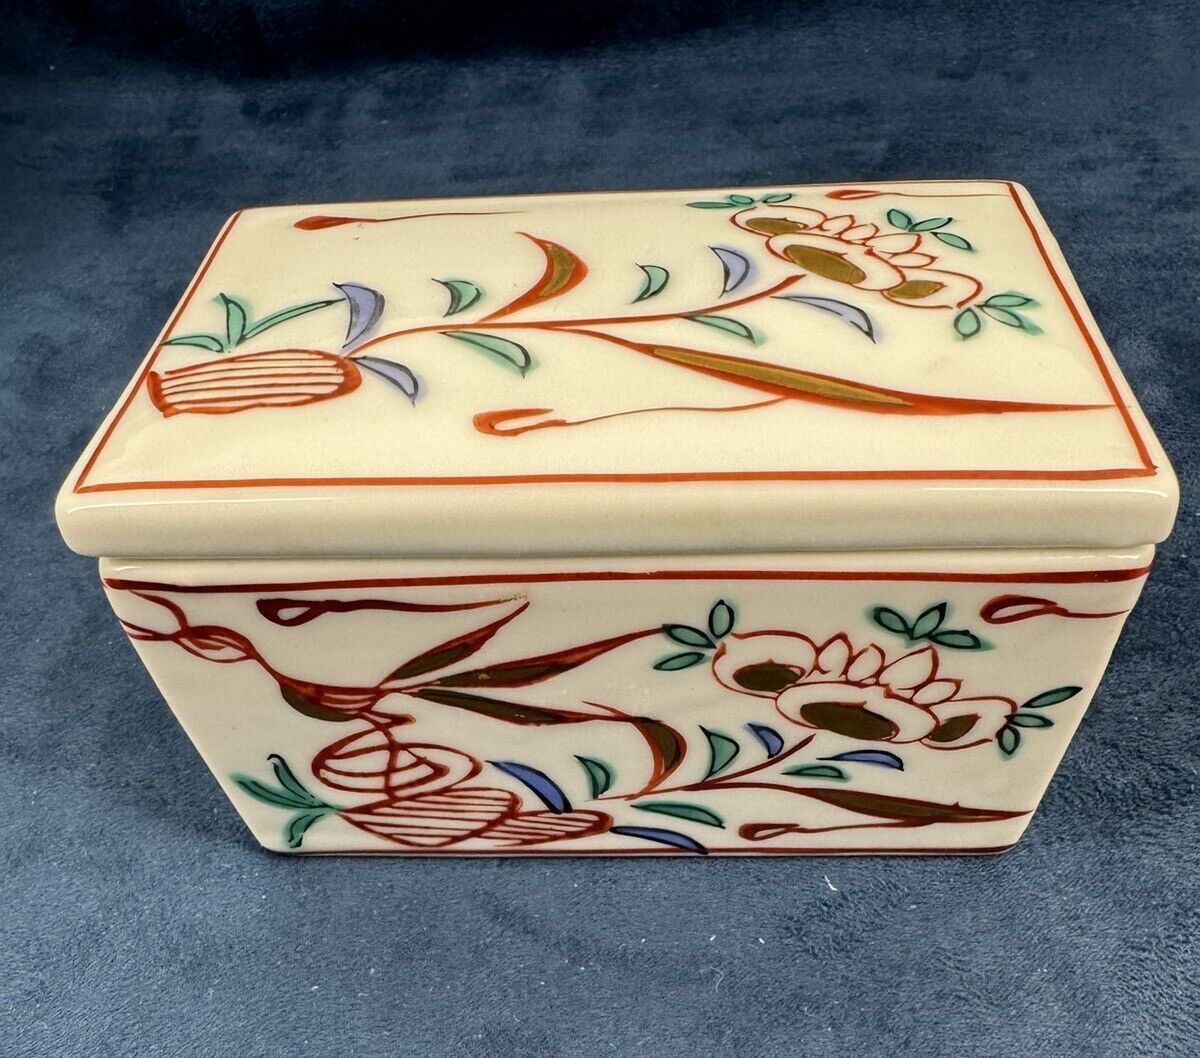 Vintage Tiffany & Co Rectangle Porcelain Trinket Box Floral Design